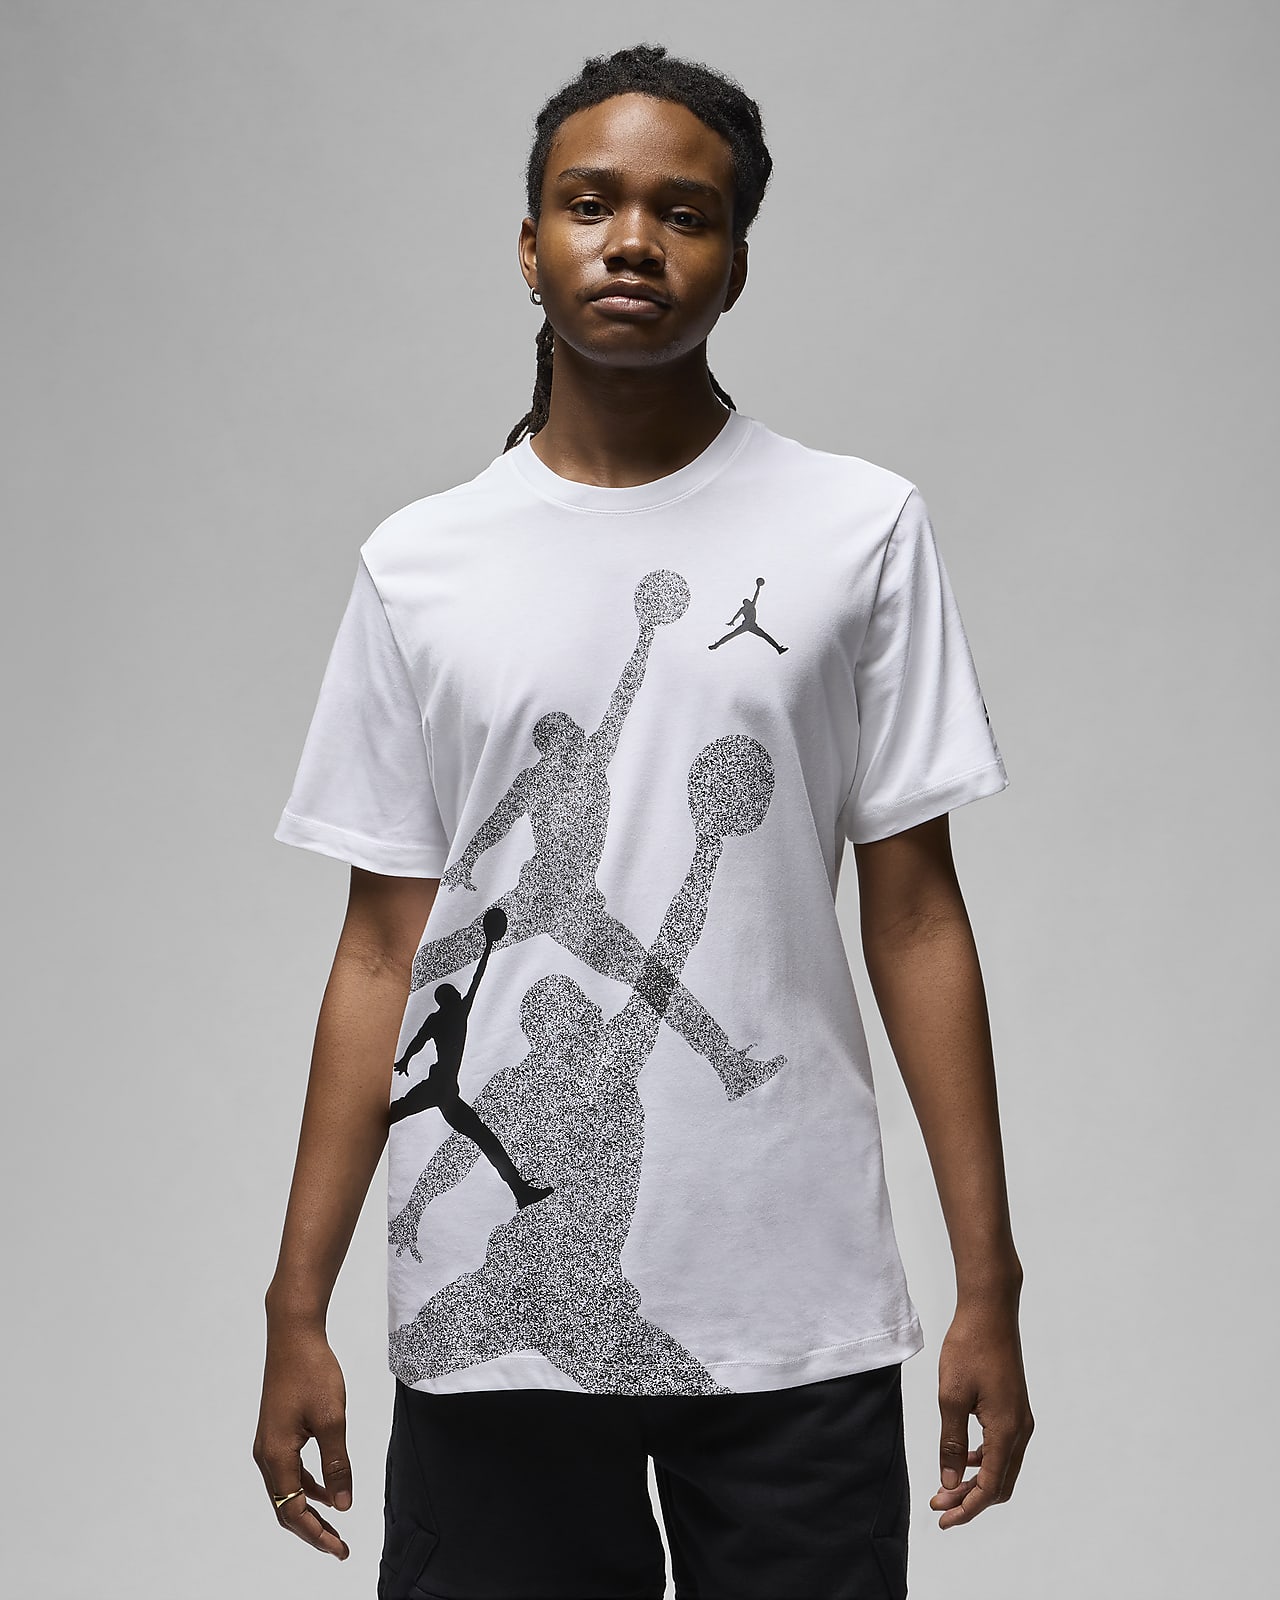 T-shirt Jordan Brand för män